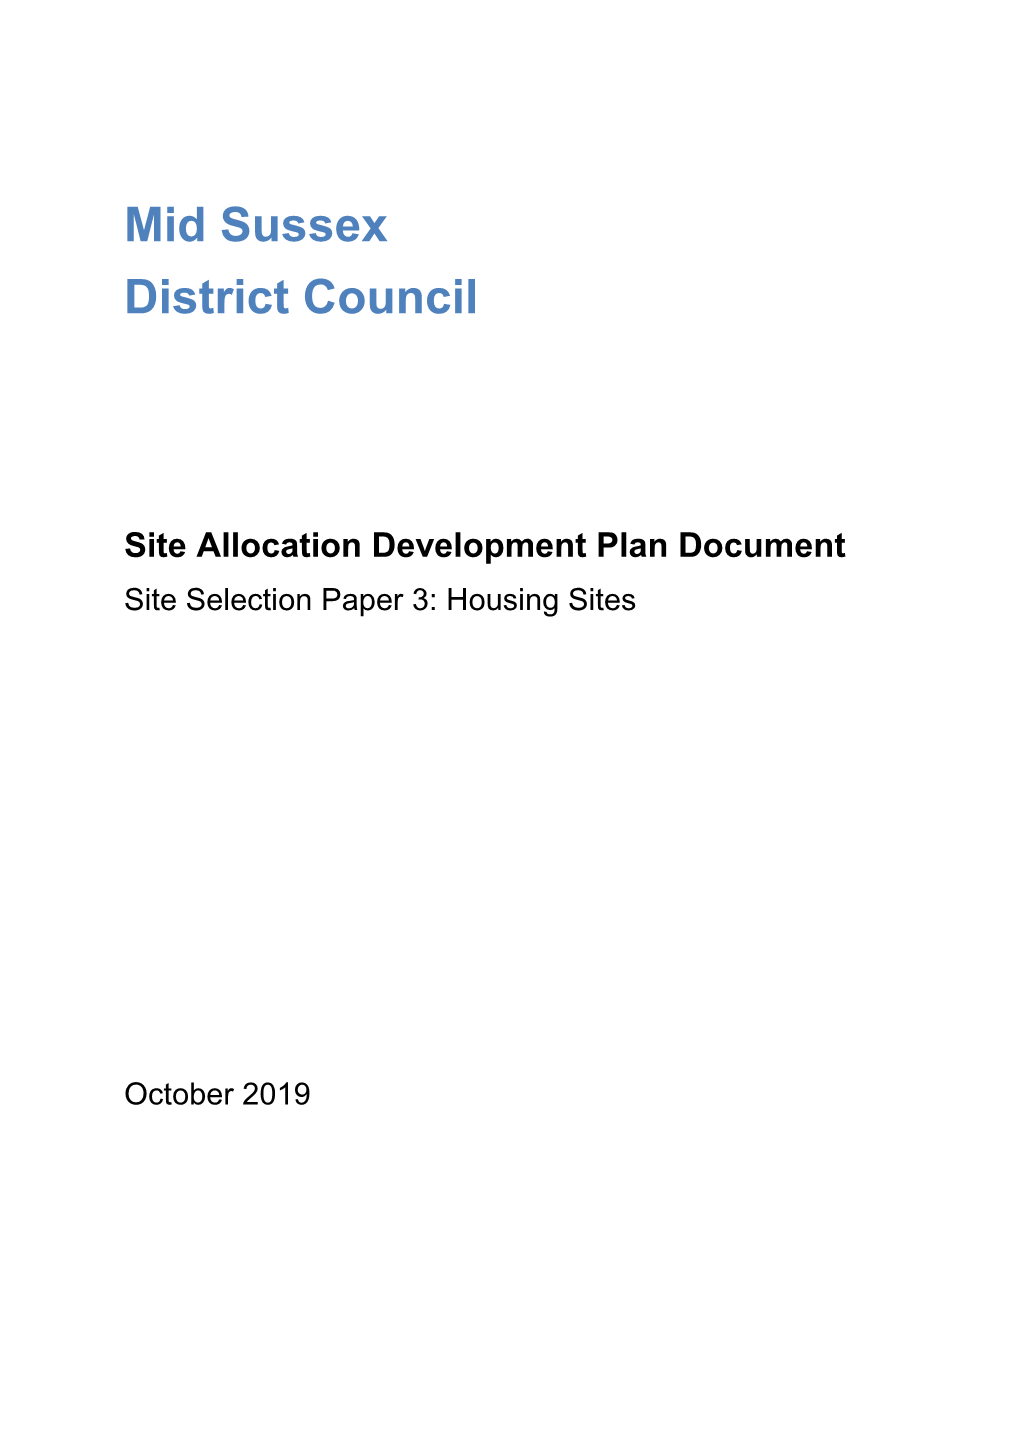 Site Allocation Development Plan Document Site Selection Paper 3: Housing Sites